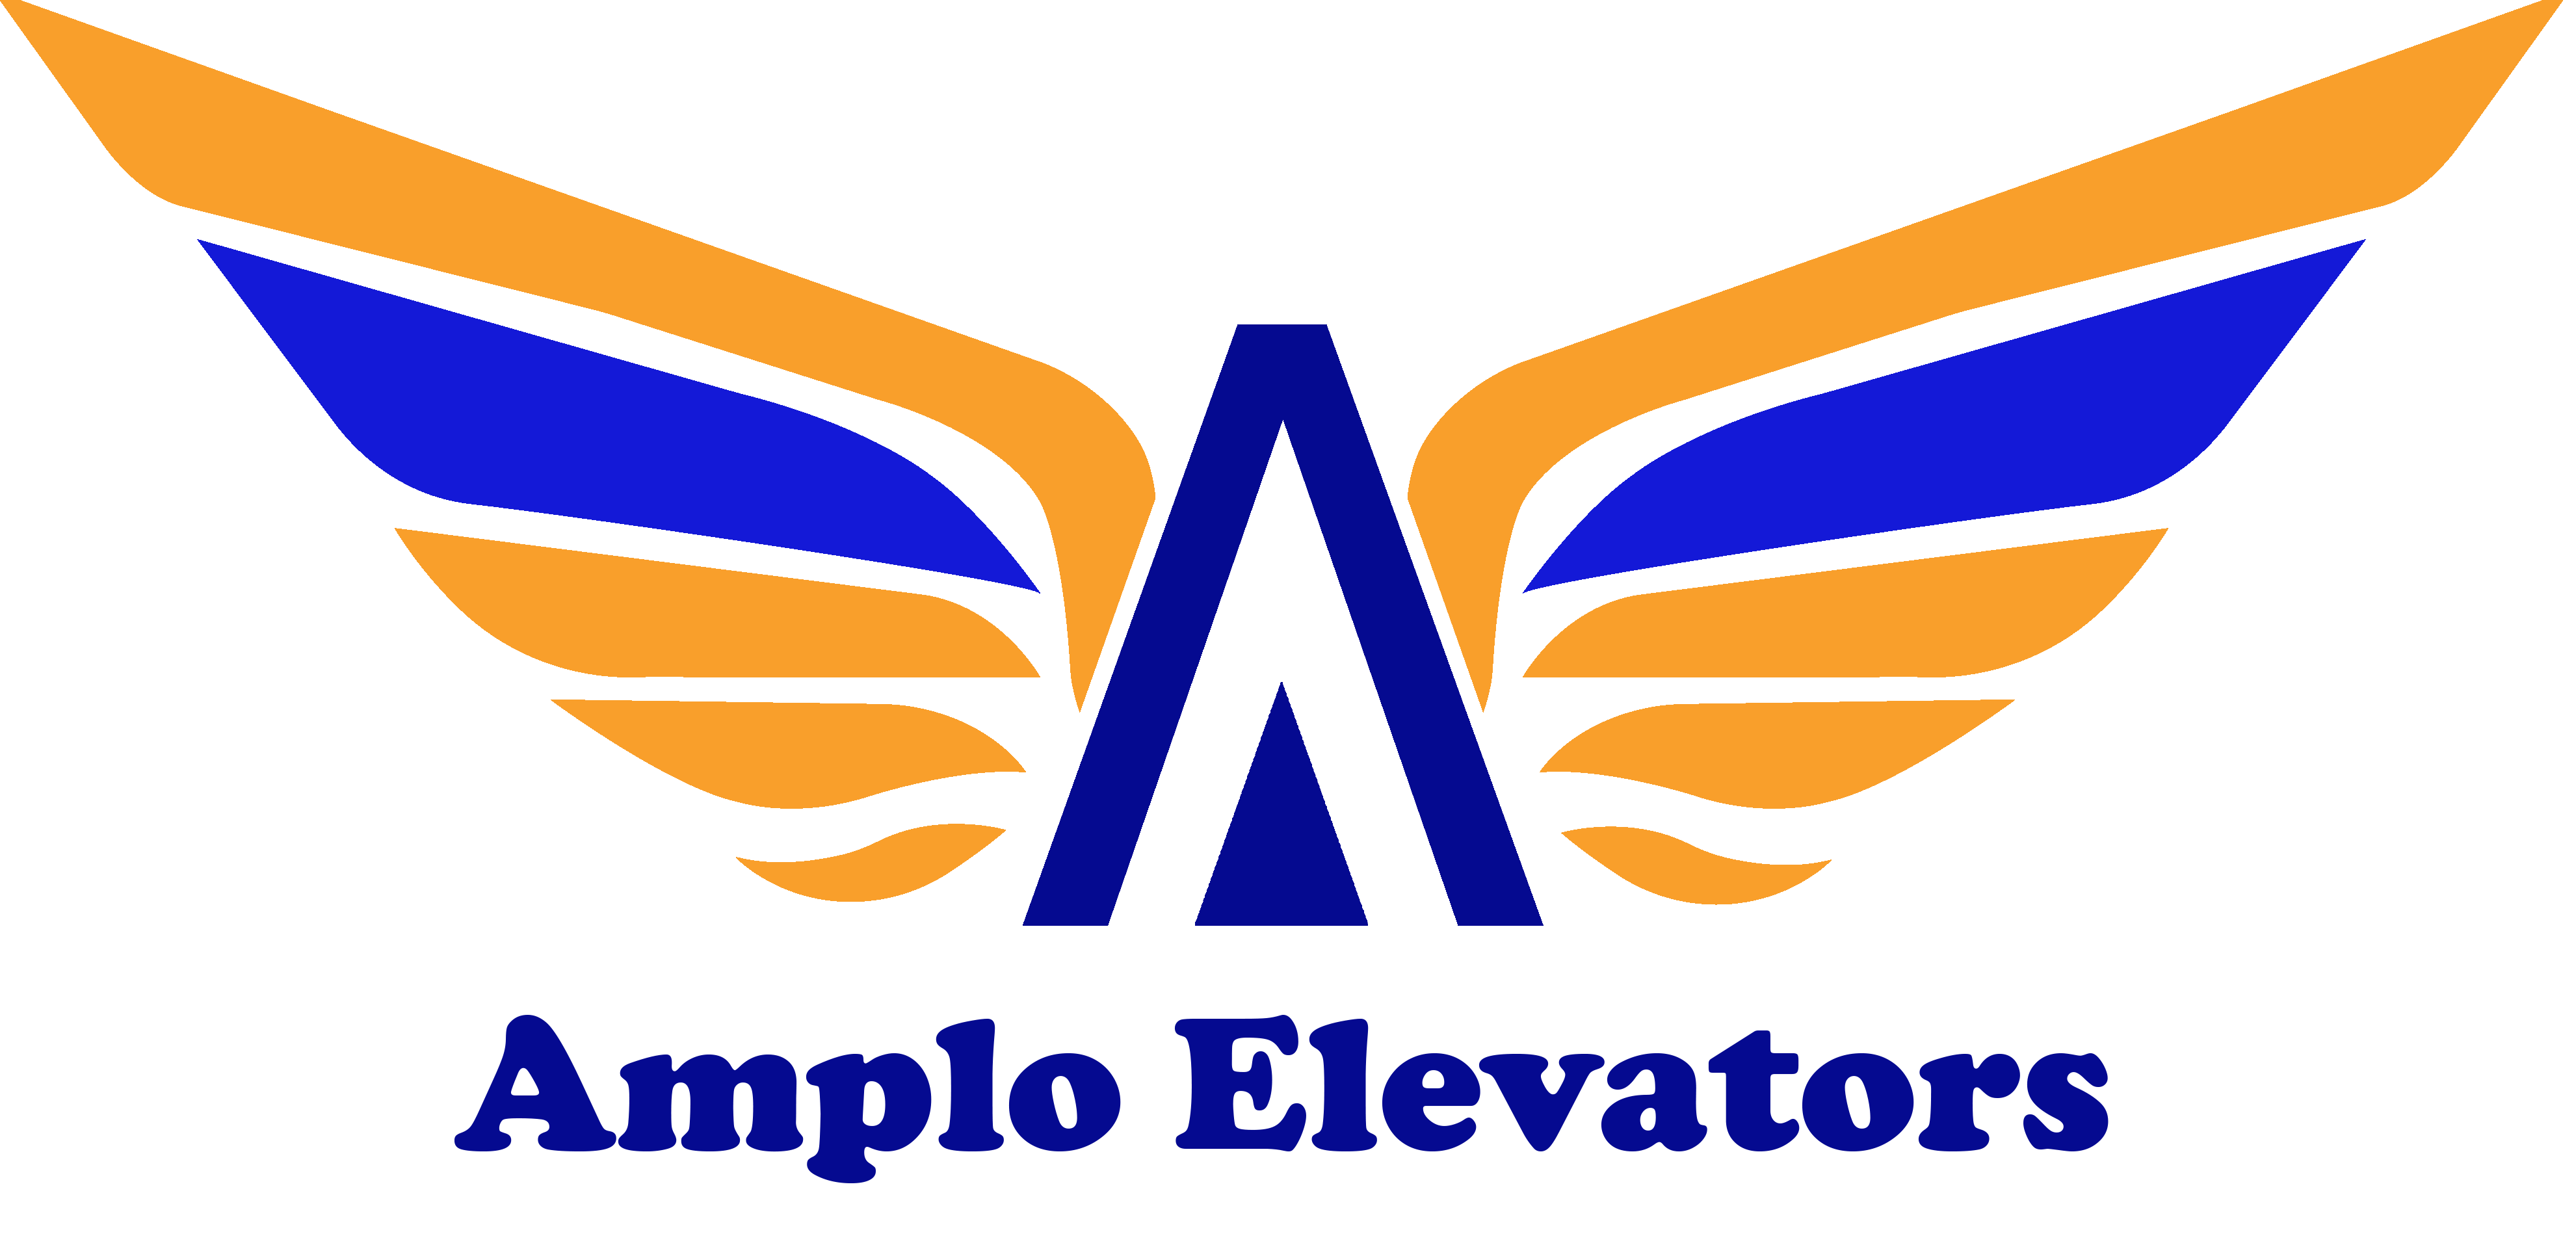 AMPLO ELEVATORS